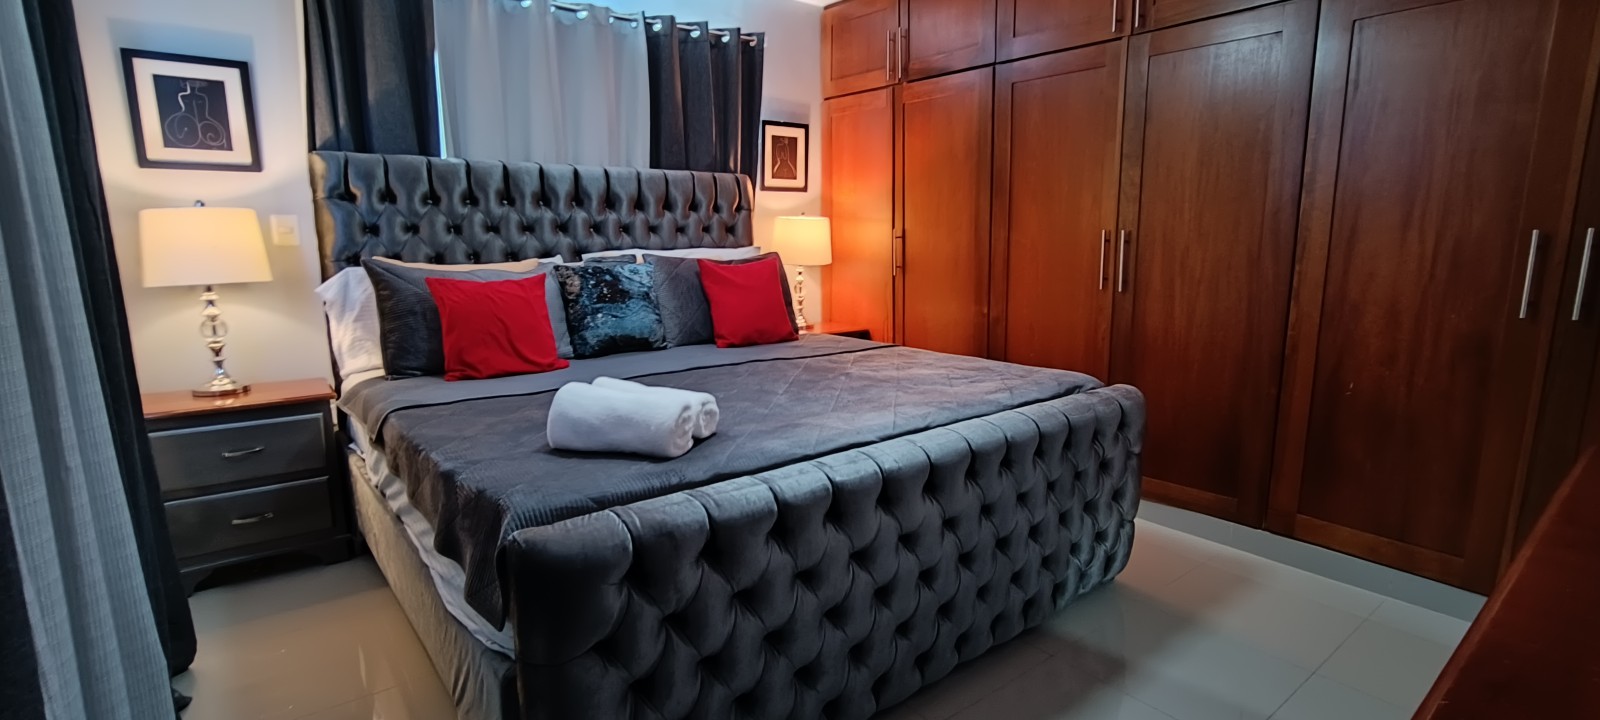 apartamentos - Airbnb AMUEBLADO en villa Olga seguro y confort